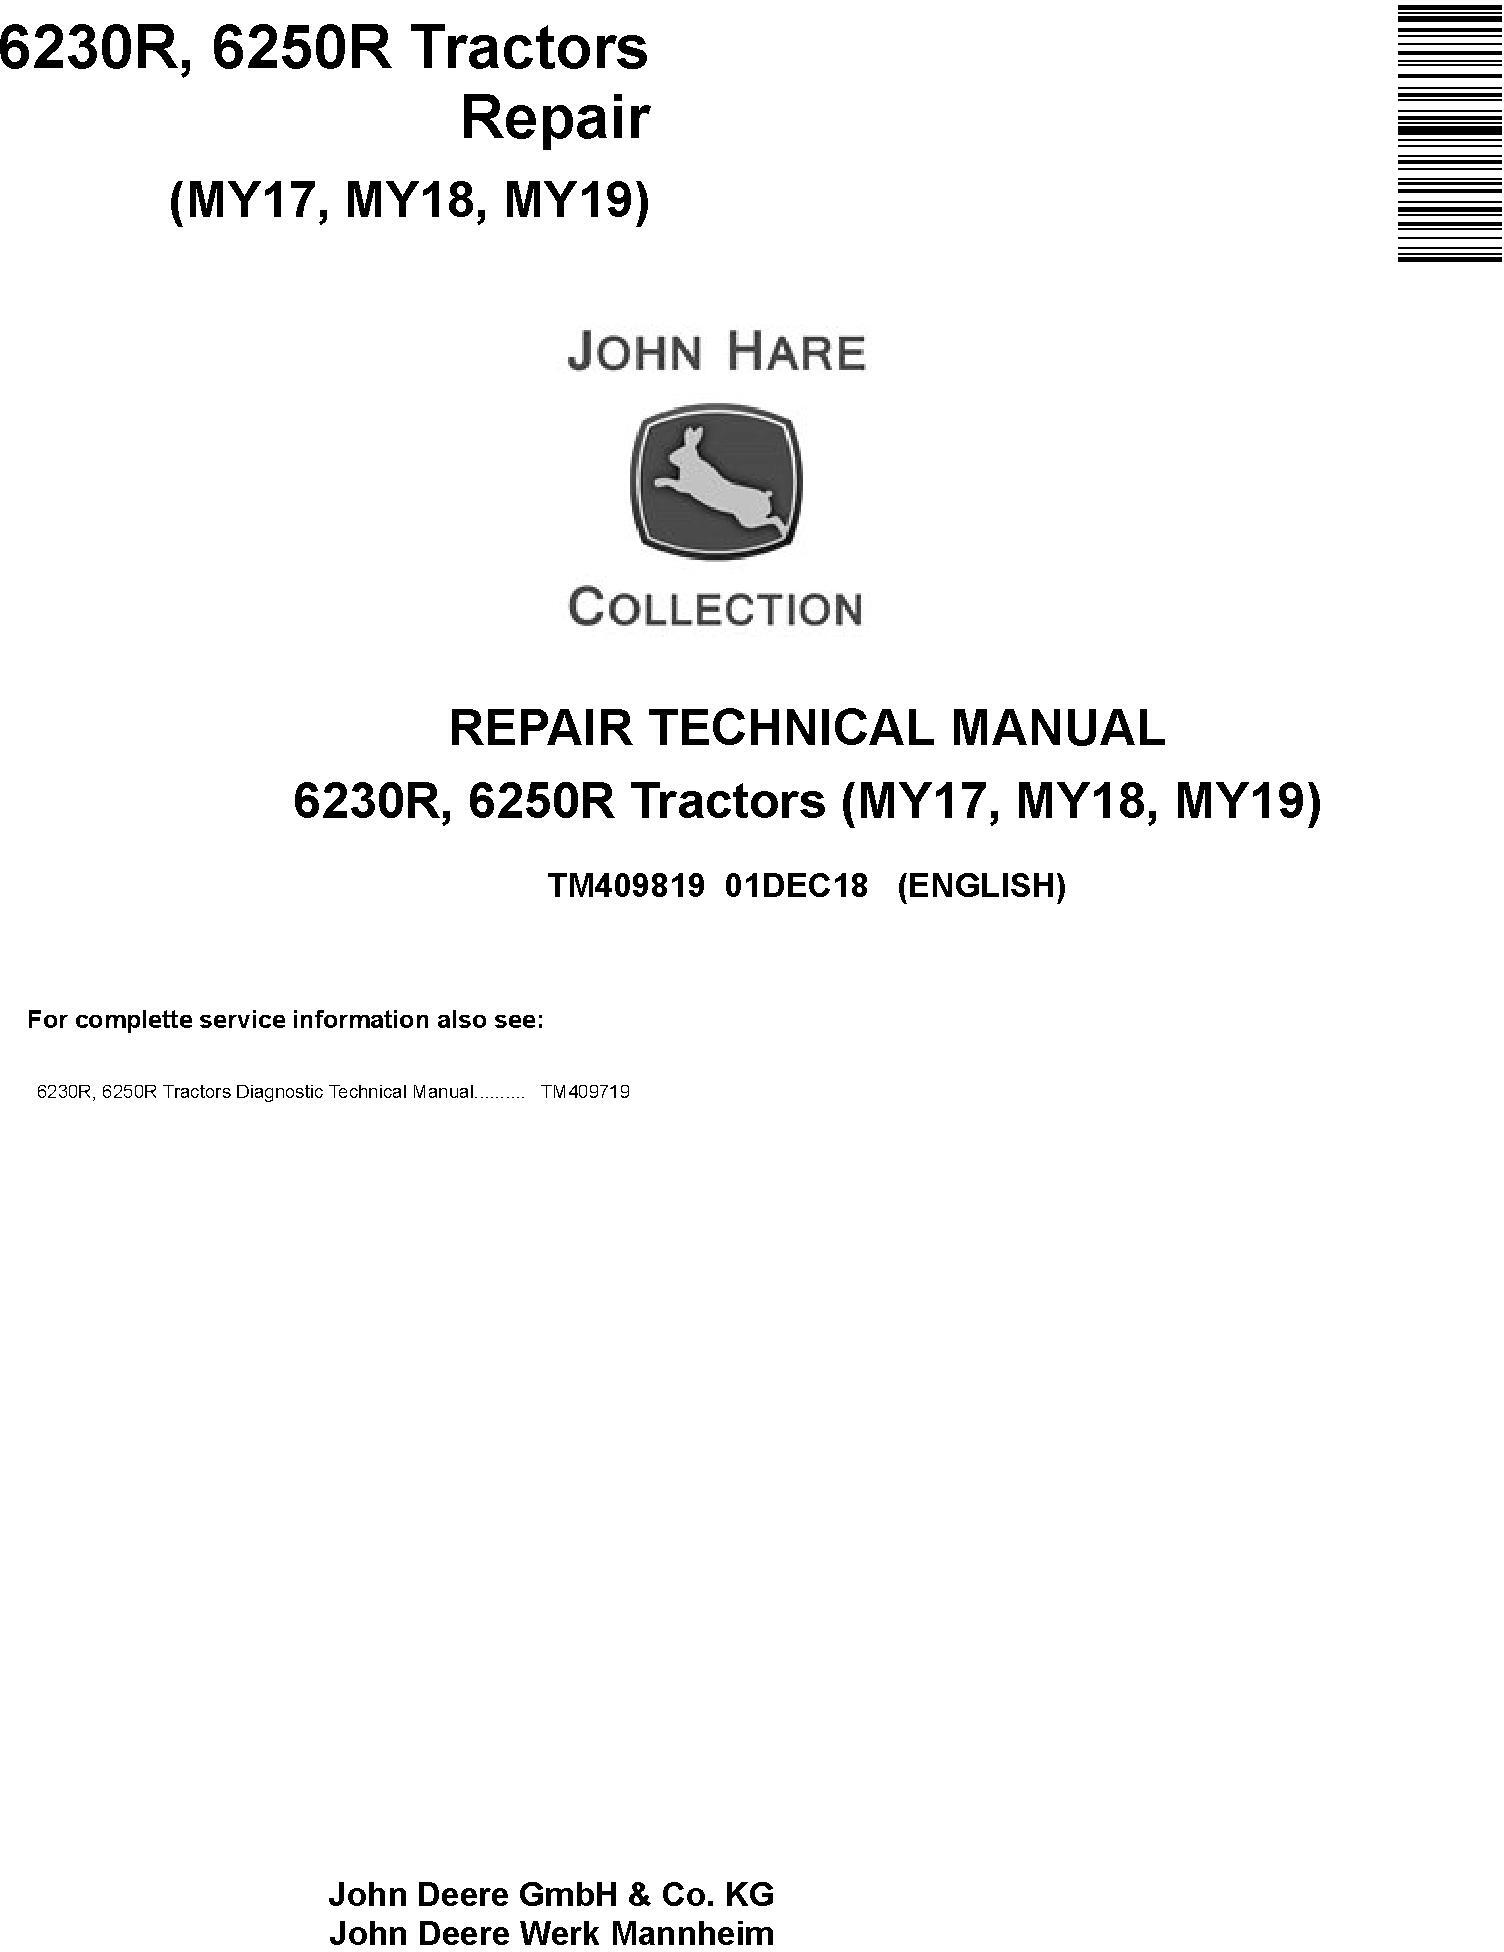 John Deere 6230R, 6250R Tractors MY2017,18,19 Service Repair Technical Manual (TM409819) - 19132